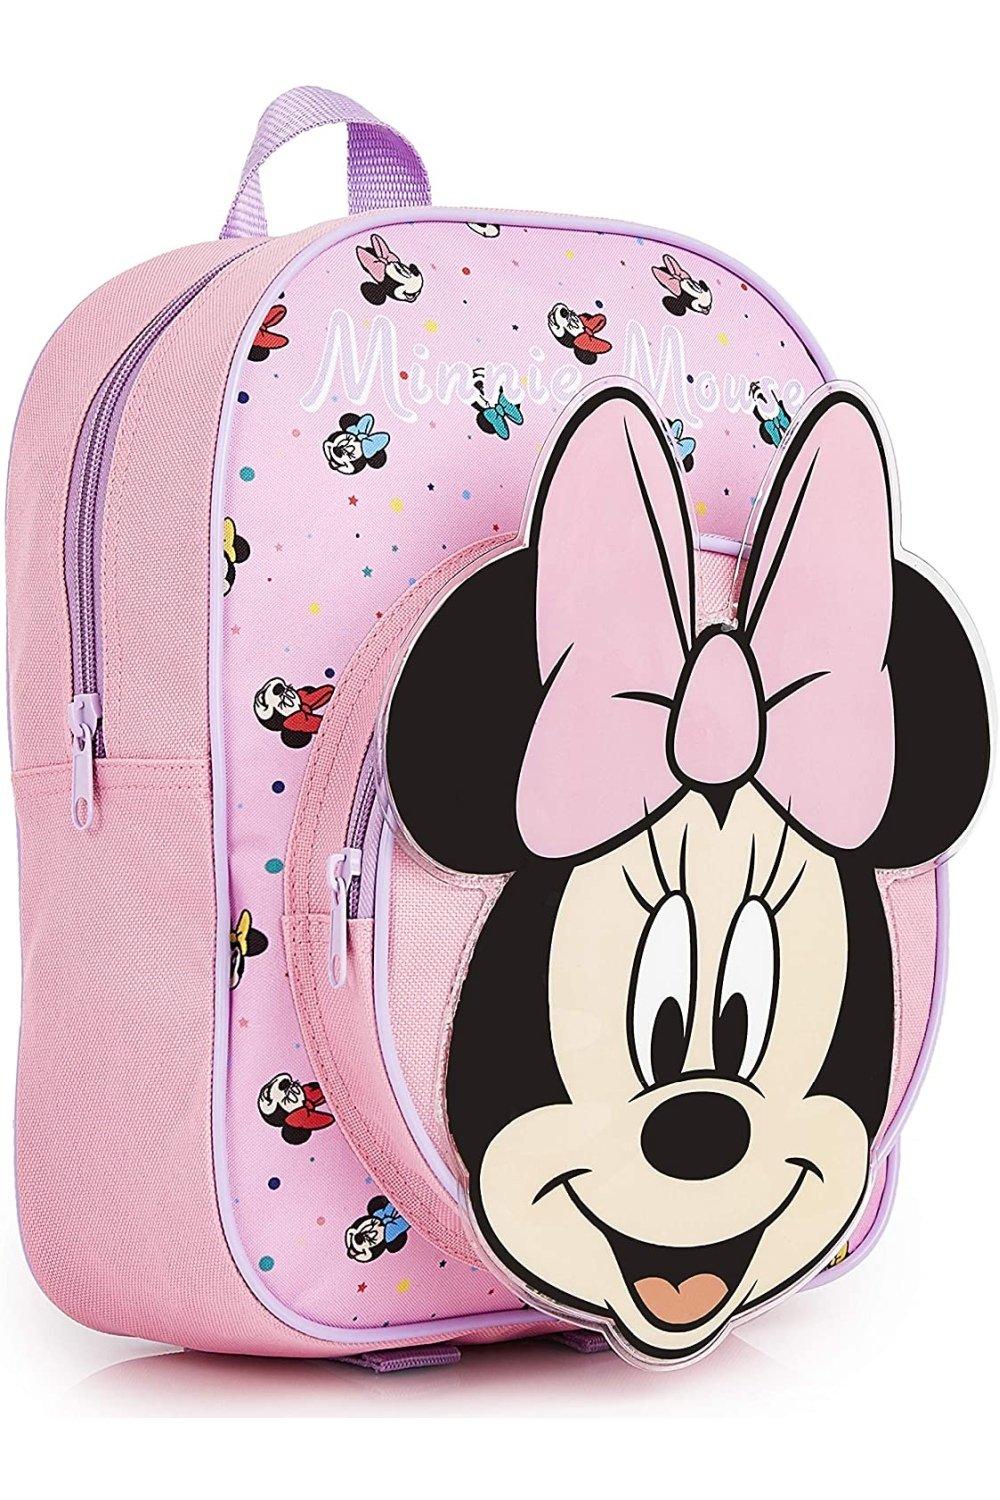 Школьная сумка Минни Маус Disney, розовый цена и фото